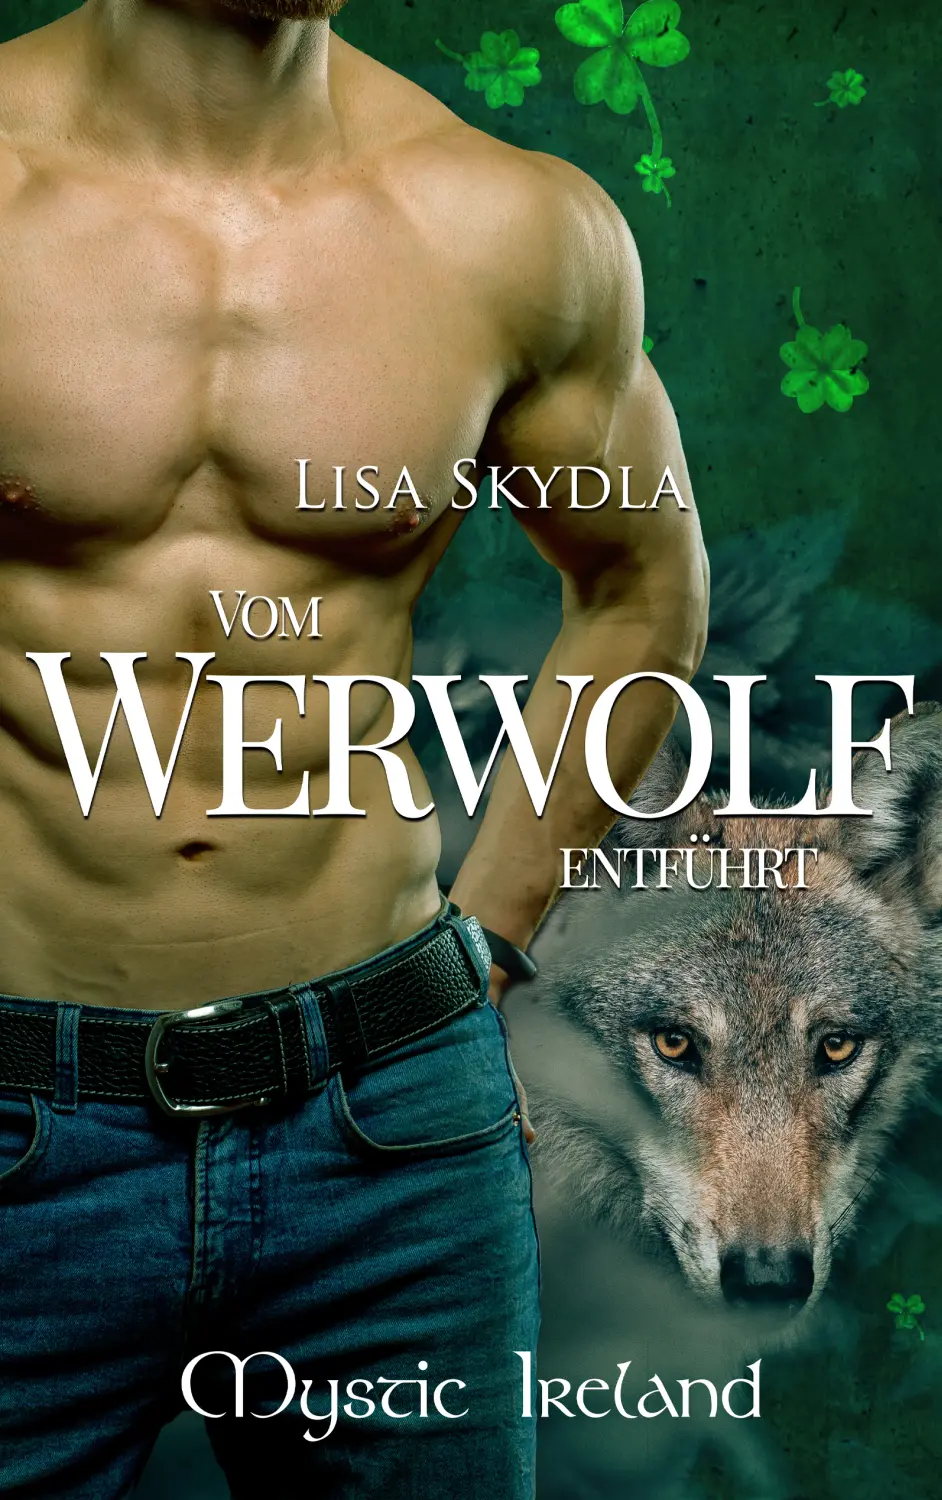 Mystic Ireland Werwolf-Finale